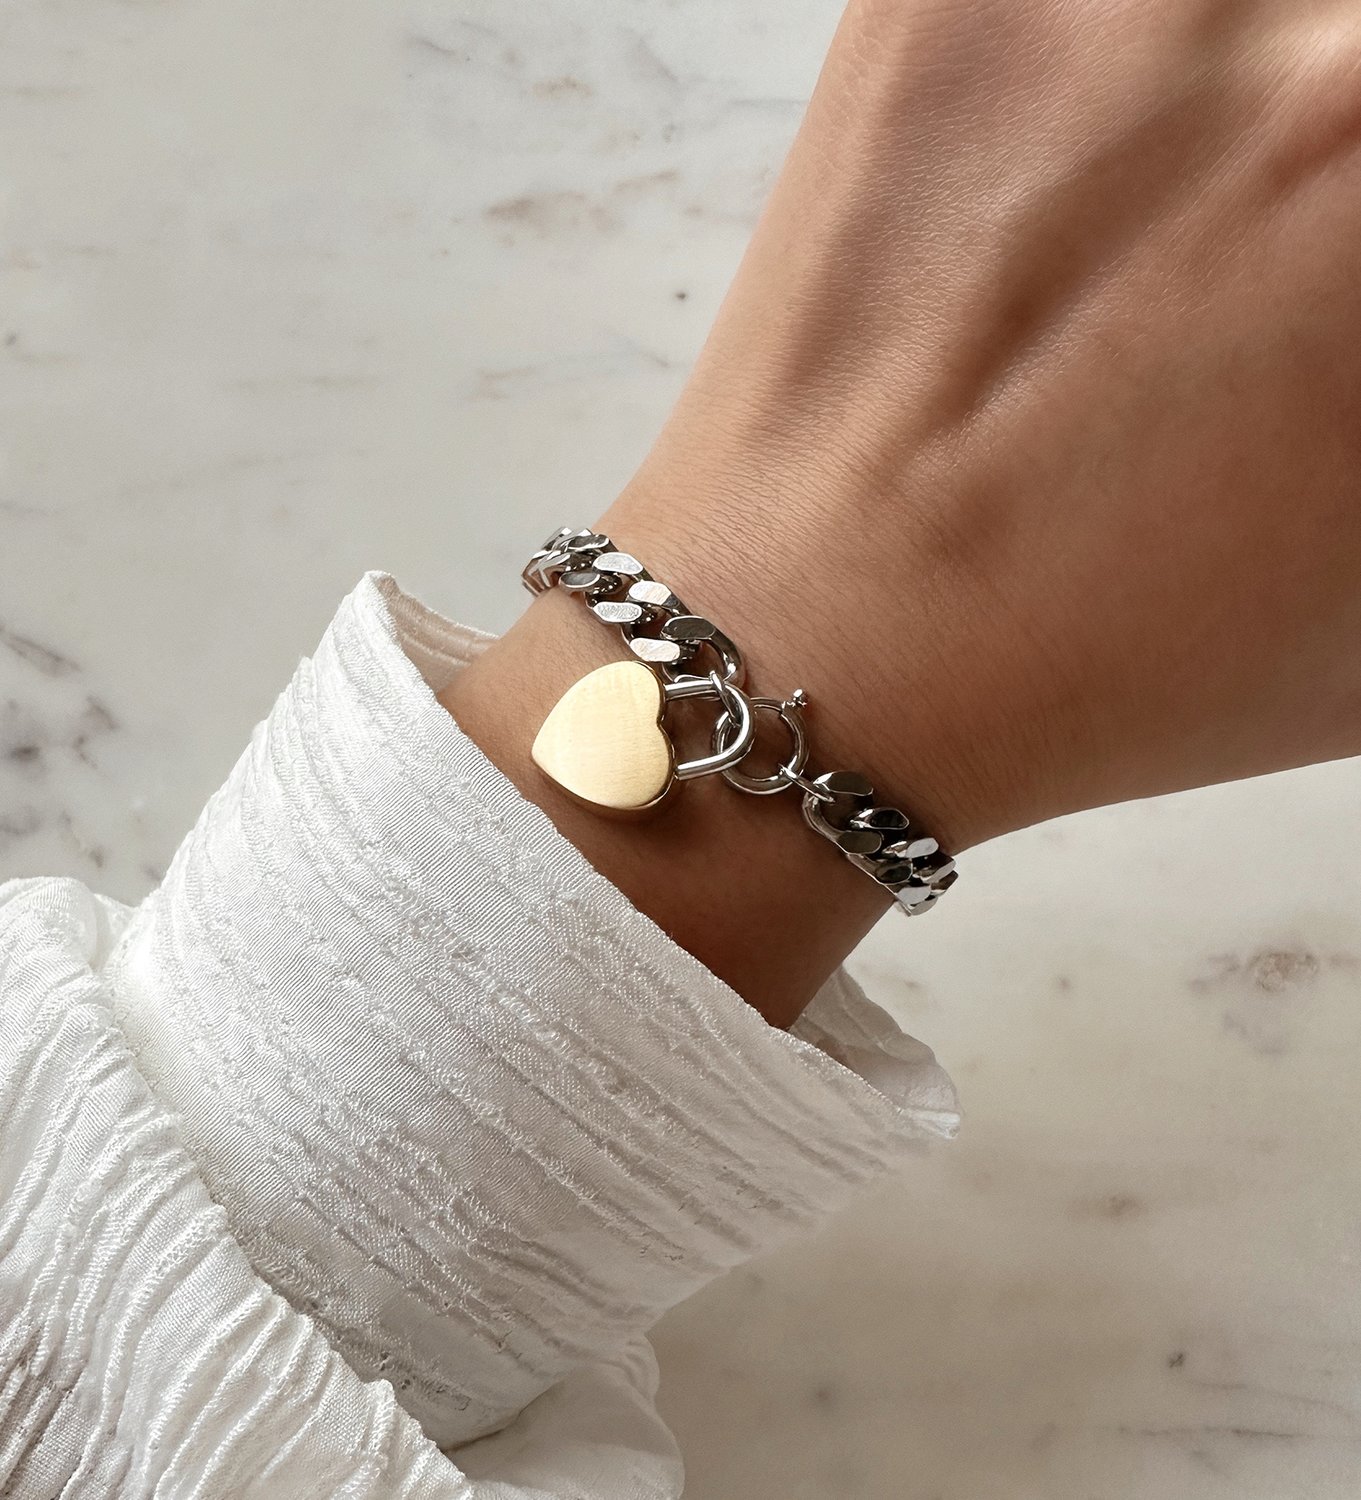 Women's wrist with MVMT heartlock bracelet